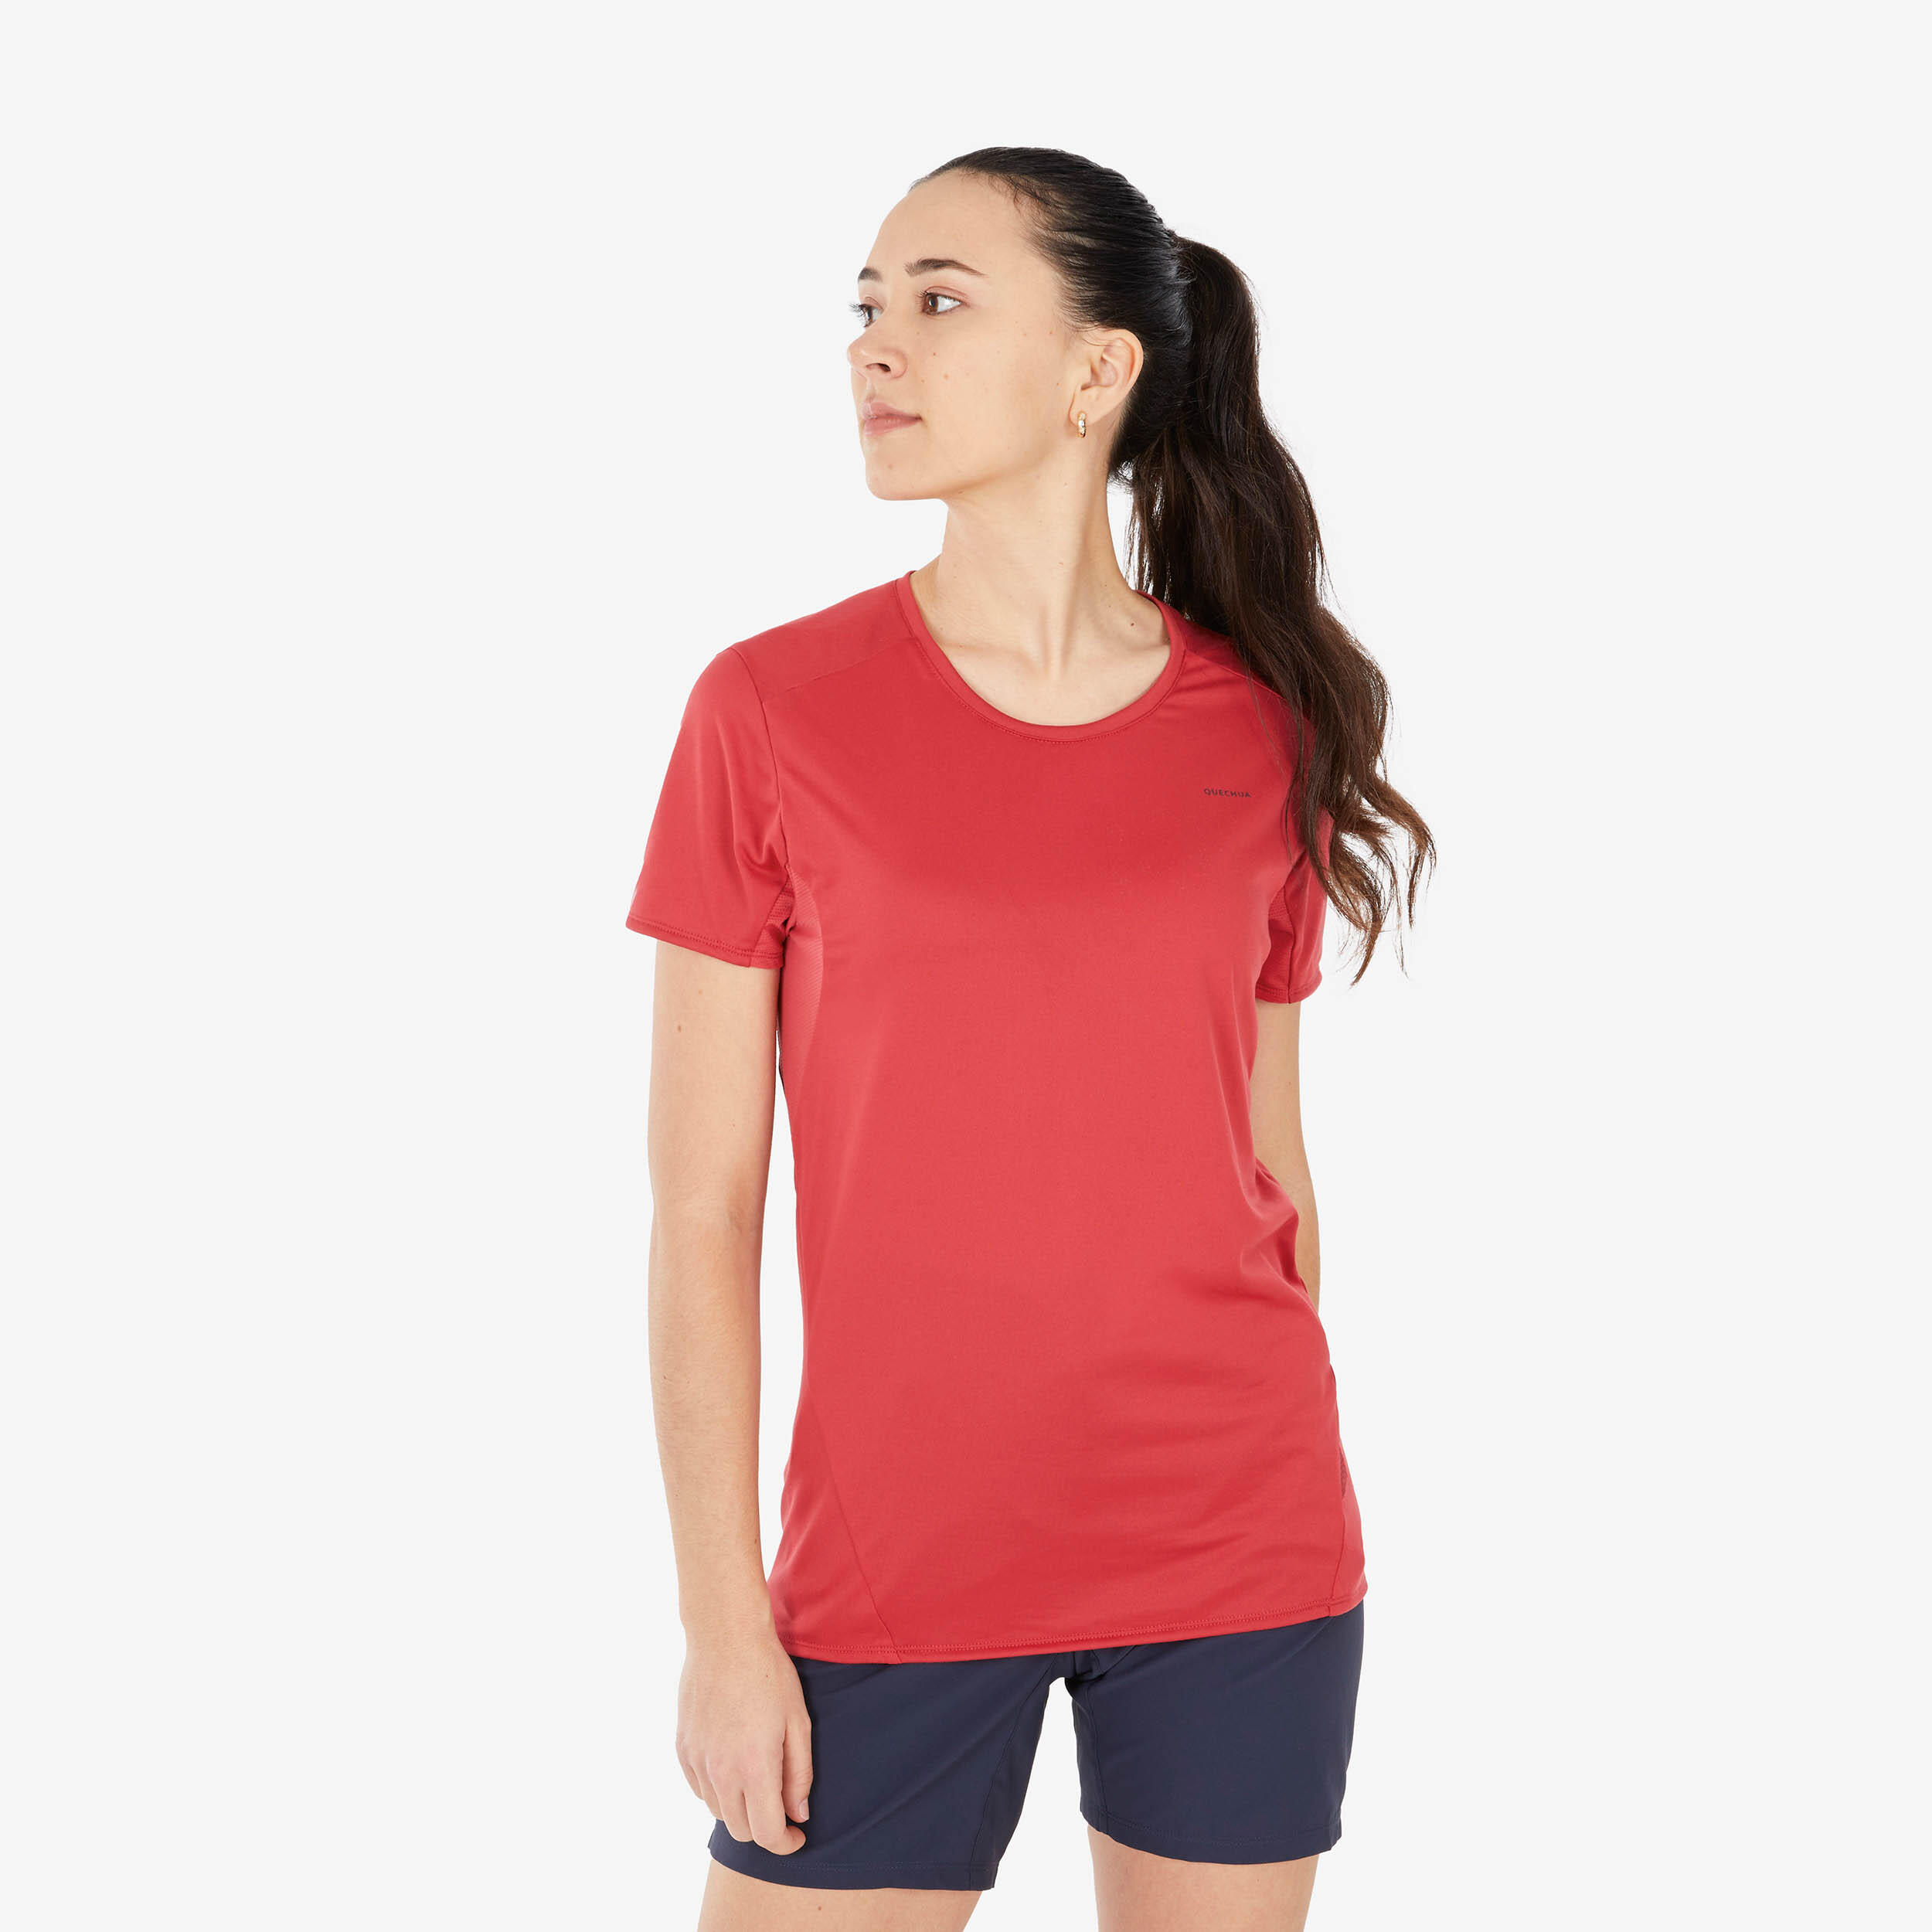 Women’s Hiking T-Shirt